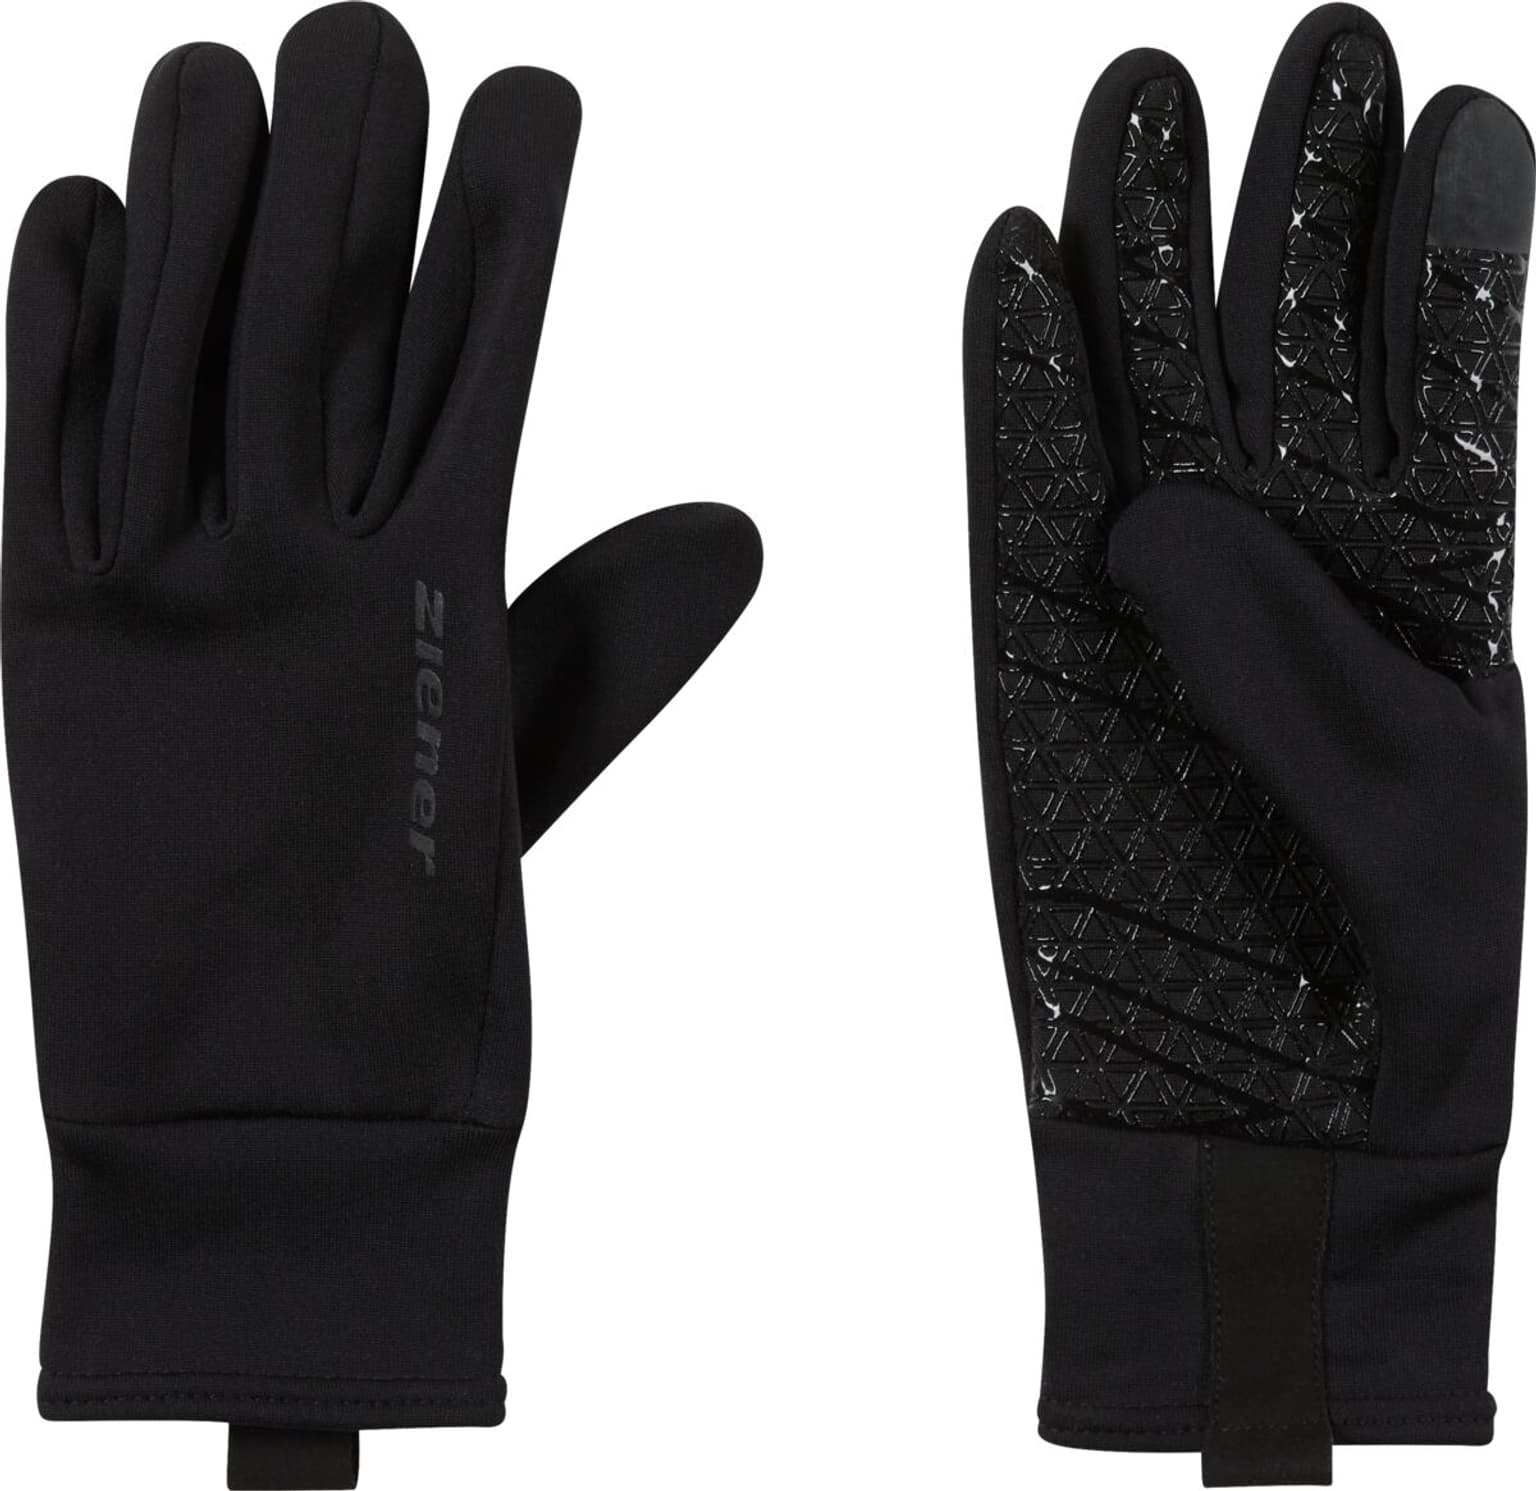 Ziener Ziener Multisport-Handschuhe Multisport-Handschuhe schwarz 1